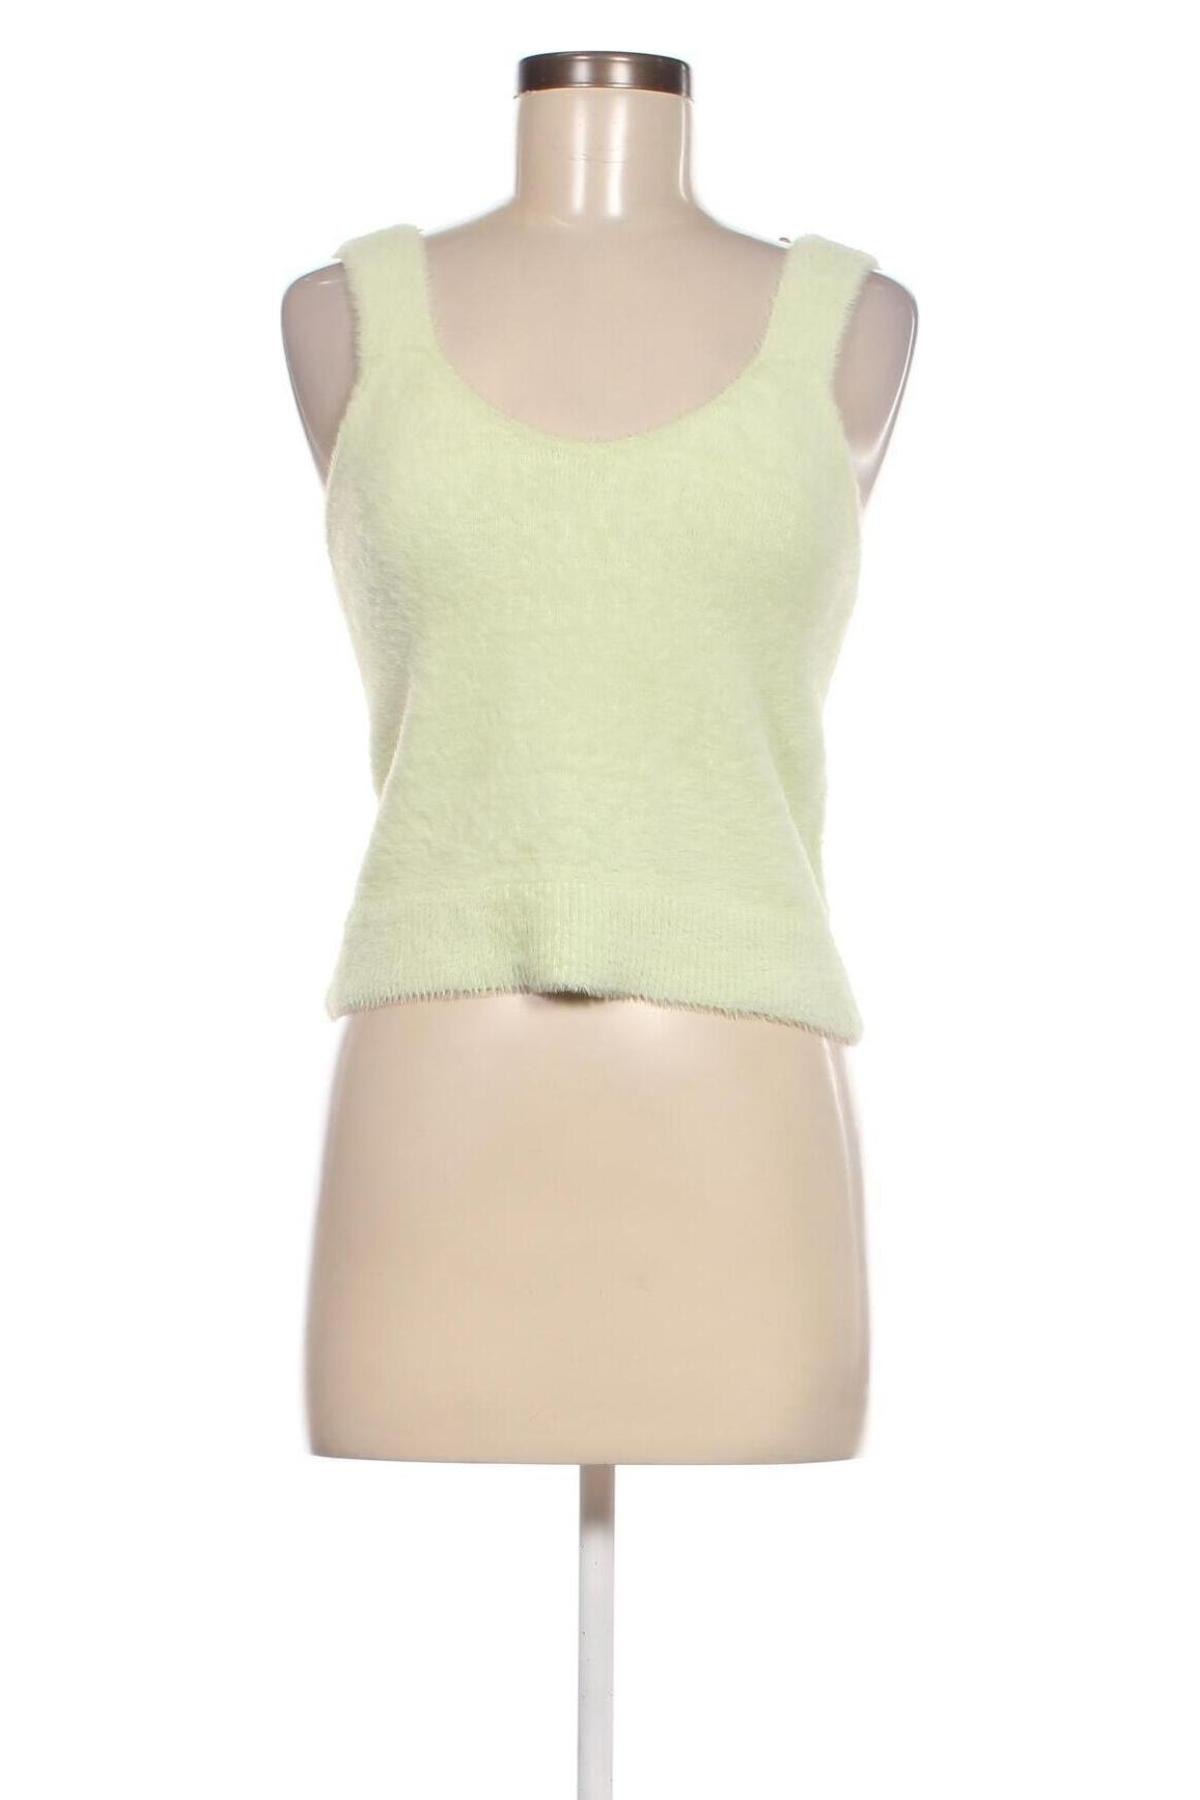 Γυναικείο αμάνικο μπλουζάκι Catwalk Junkie, Μέγεθος L, Χρώμα Πράσινο, Τιμή 4,78 €